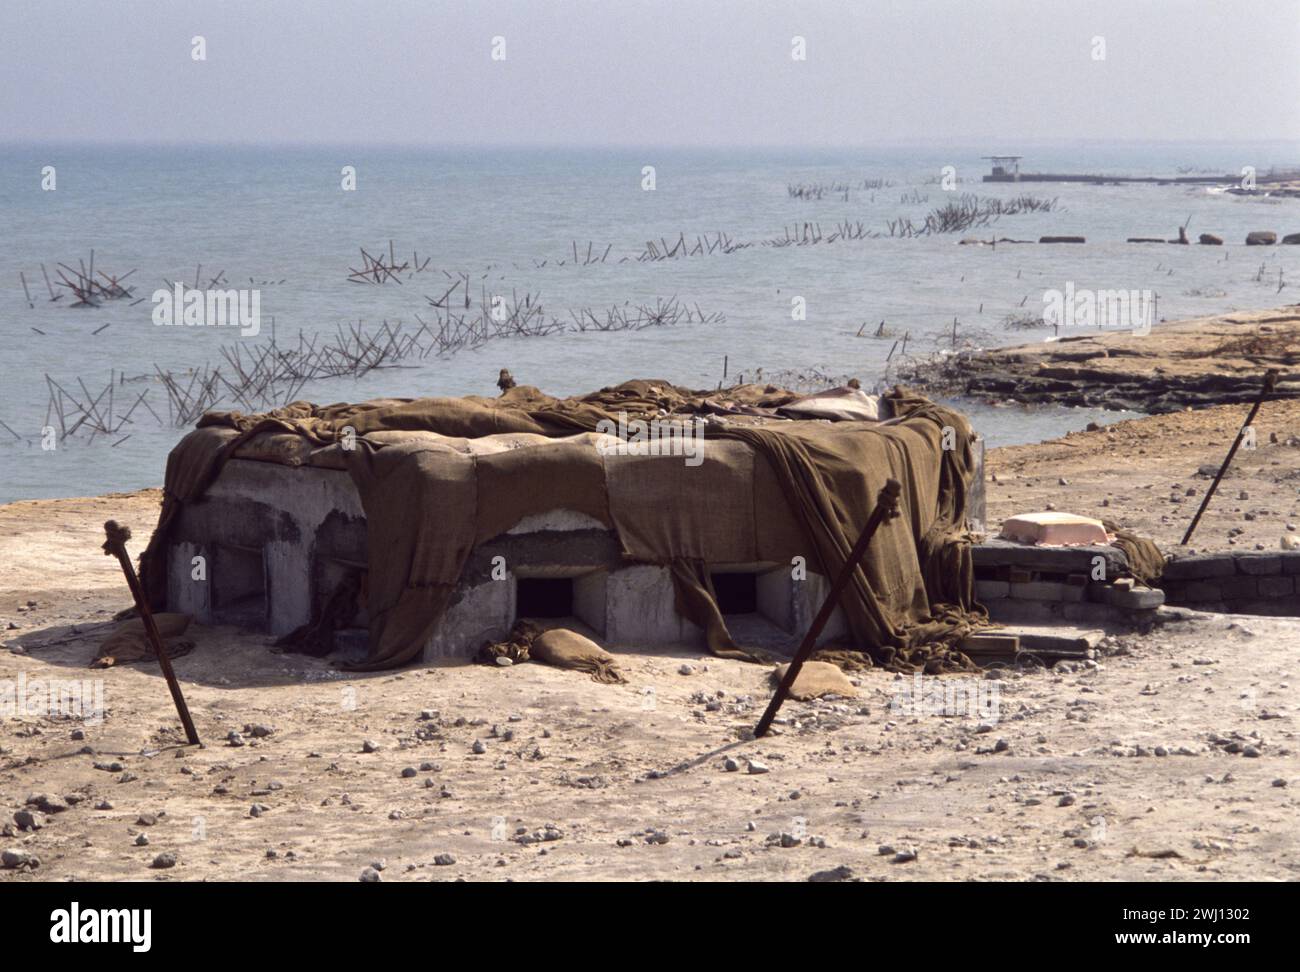 10 mars 1991. Un bunker irakien abandonné surplombant les défenses barbelées sur le front de mer à Koweït City. Banque D'Images